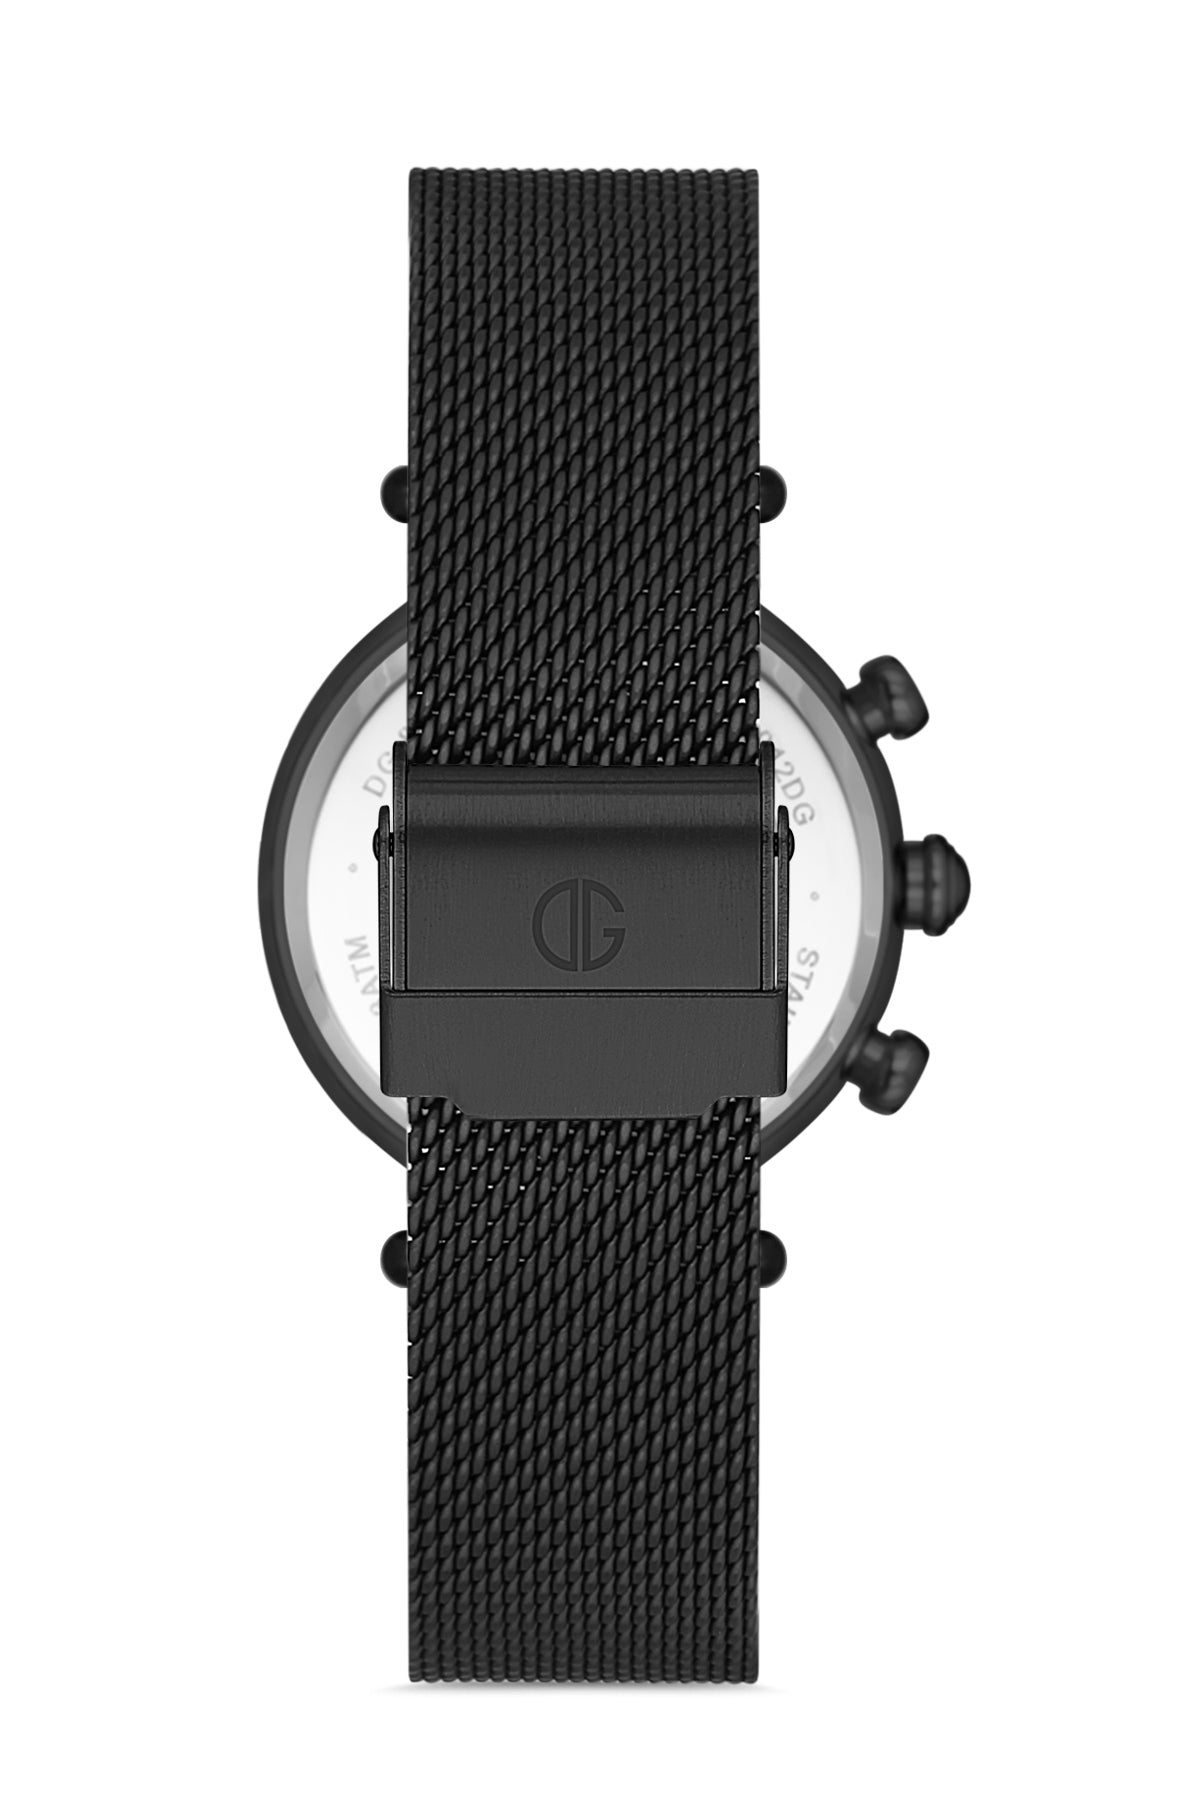 DAVID GUNER Women's Wristwatch with Black Steel Knitted Strap